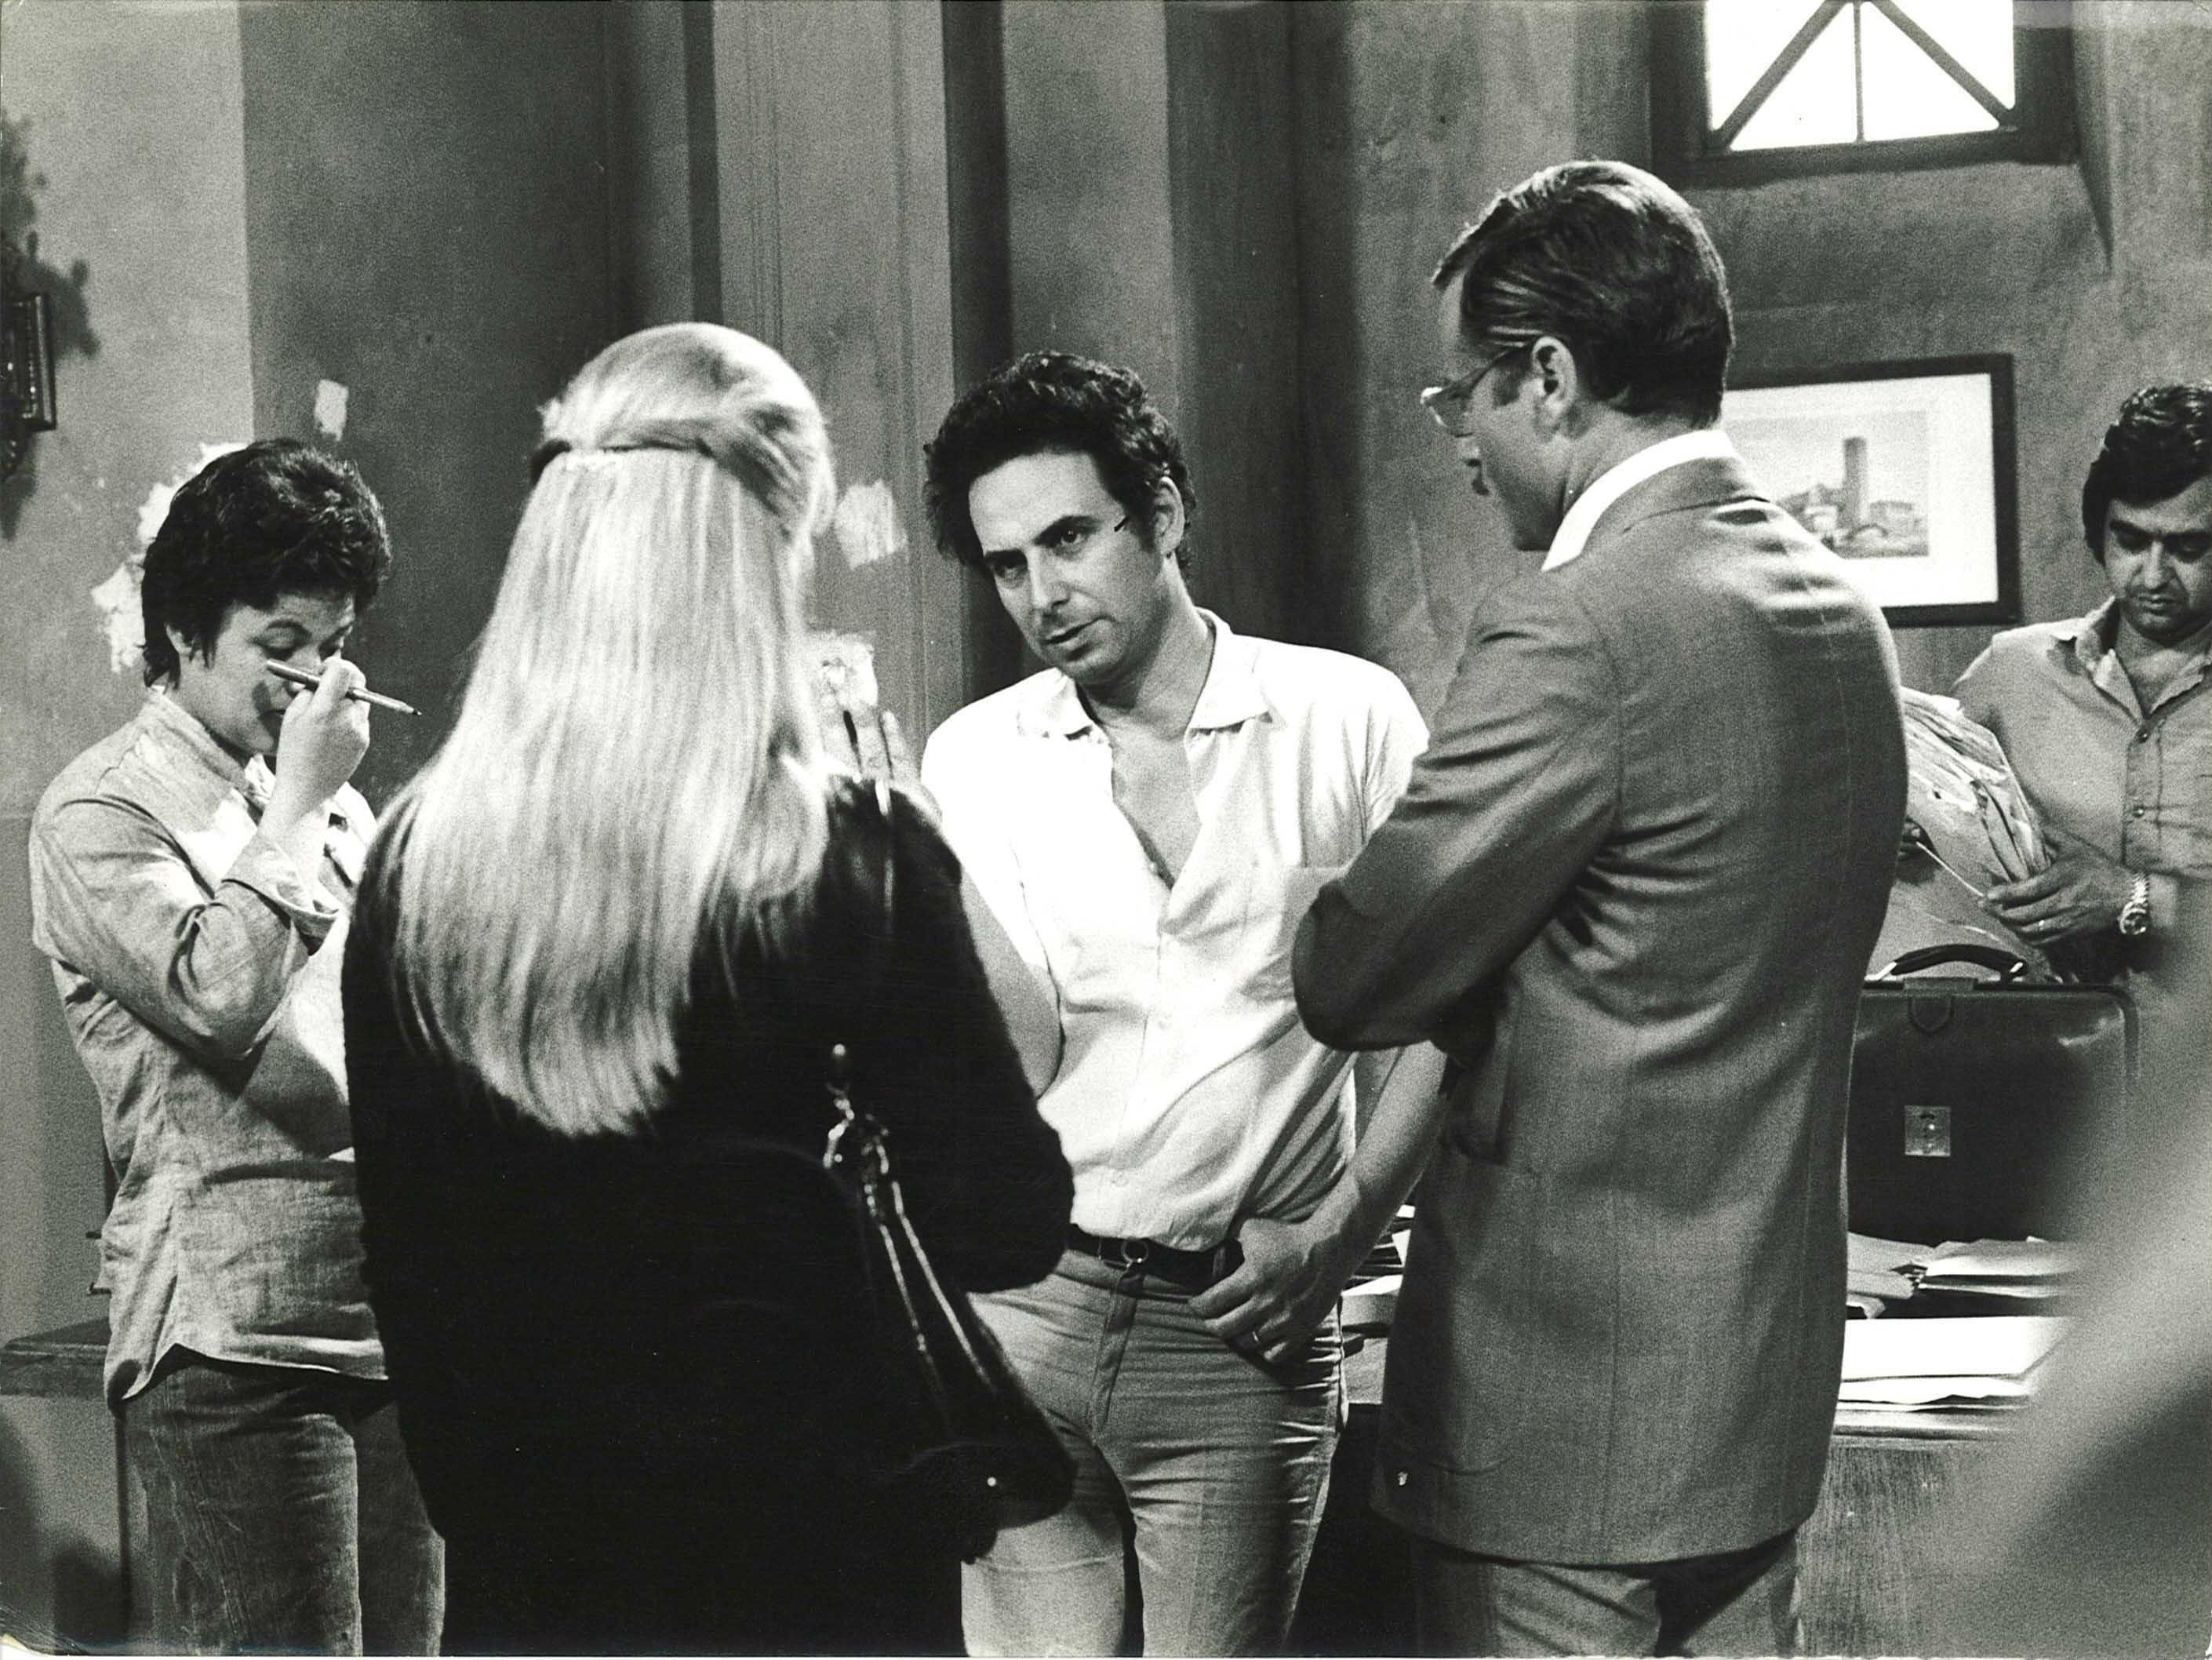 Corruzione al palazzo di giustizia, on the set, 1974. (In the center: Marcello Aliprandi. On the right: Franco Nero)